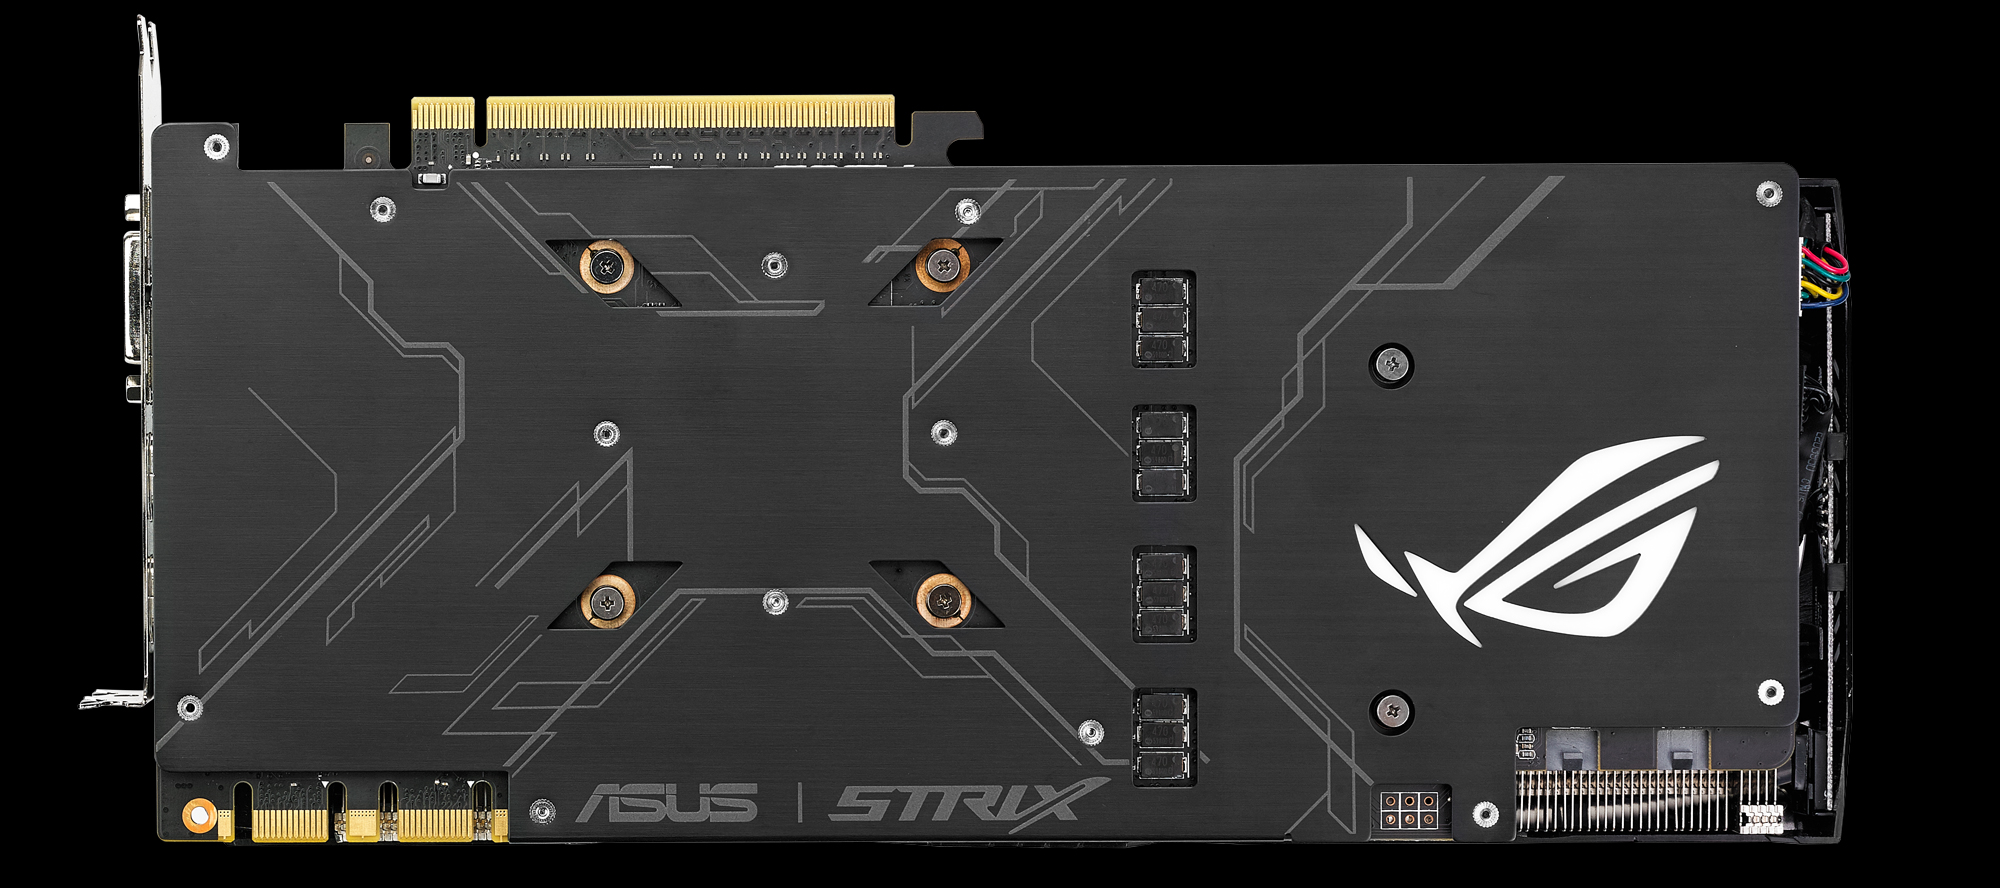 ASUS-ROG-STRIX-GeForce-GTX-1080_2.jpg